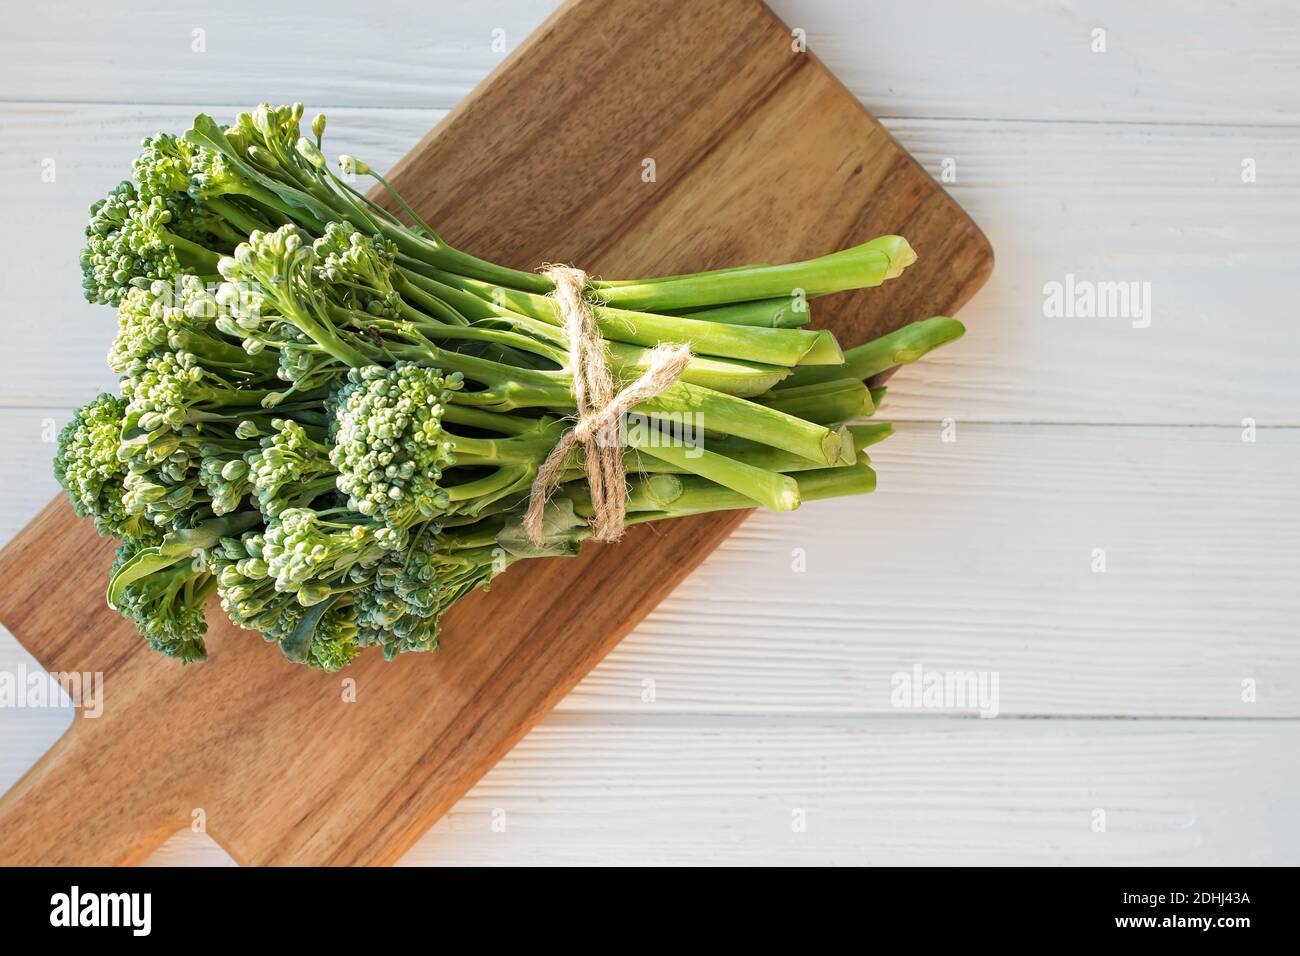 Verdure crude verdi broccolini su tavola di legno. Cibo biologico sano, vista dall'alto Foto Stock